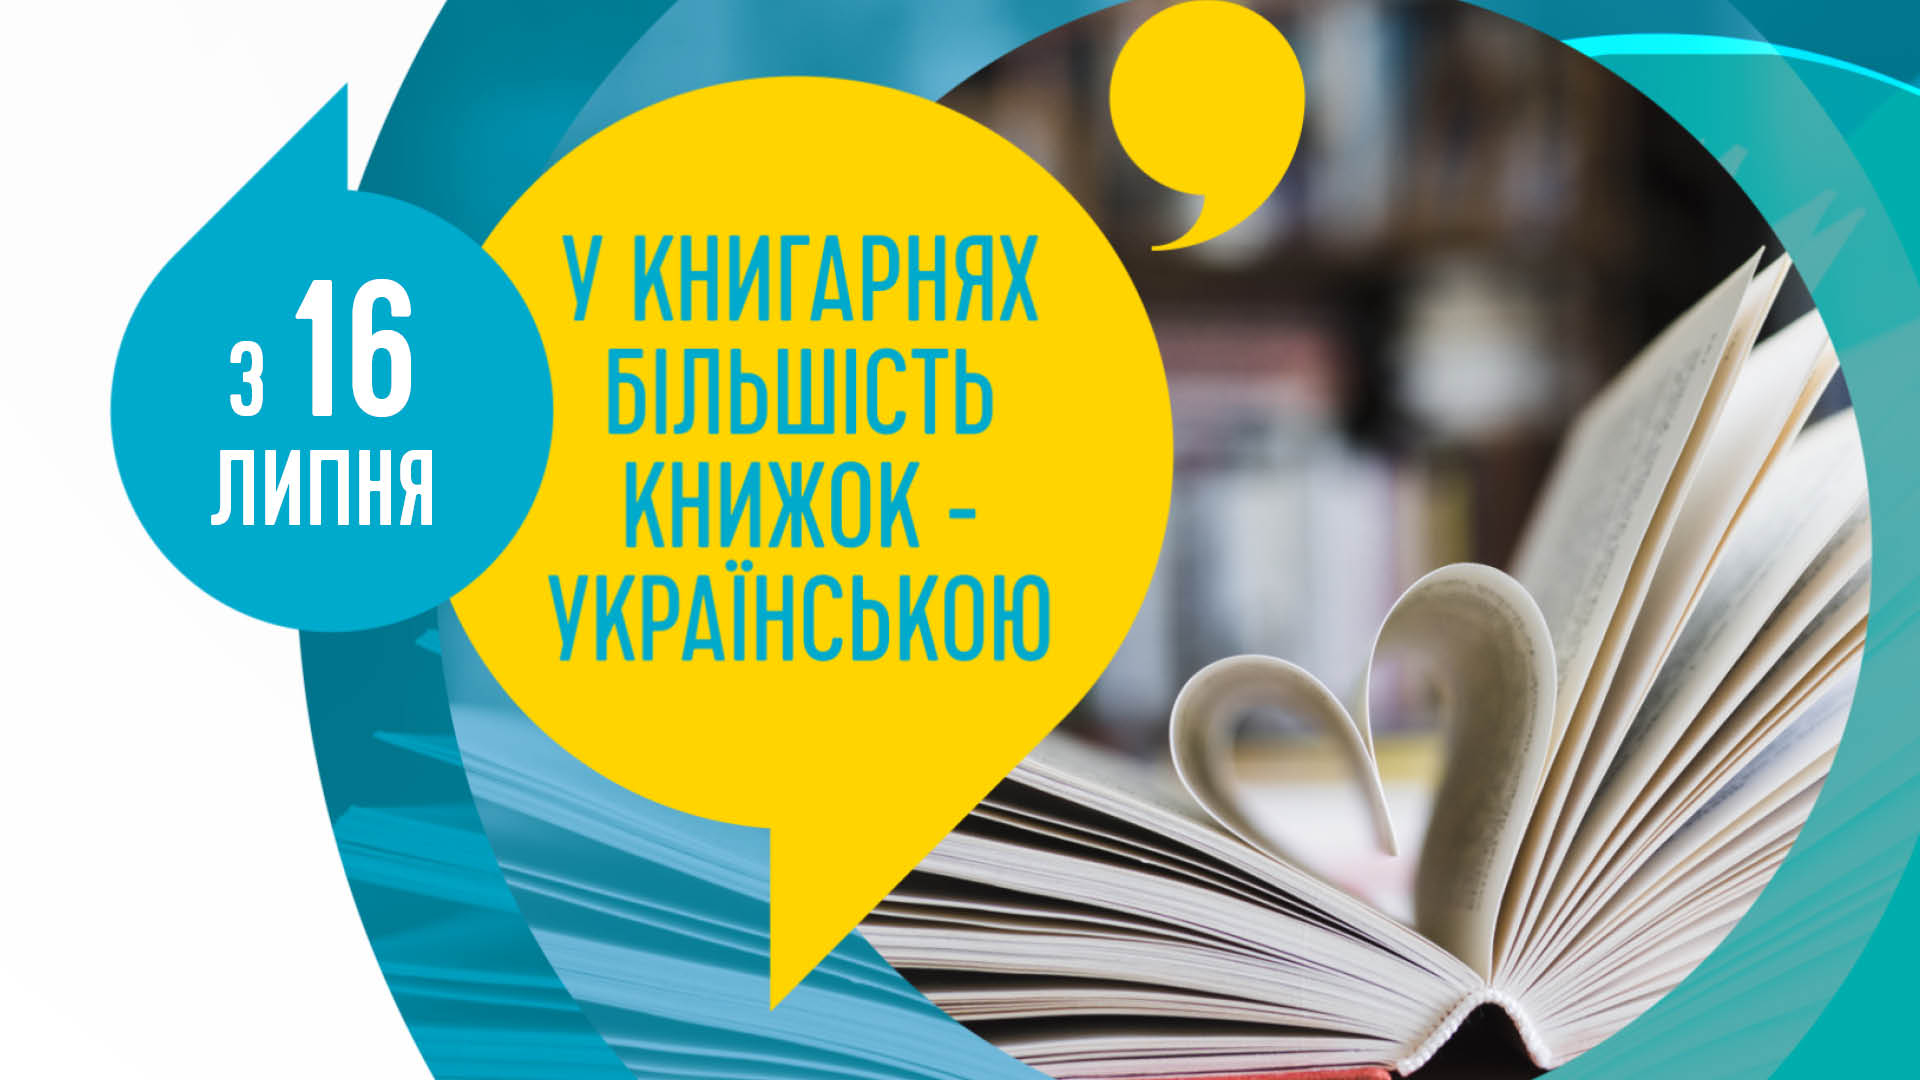 З 16 липня - ще більше української мови! 11